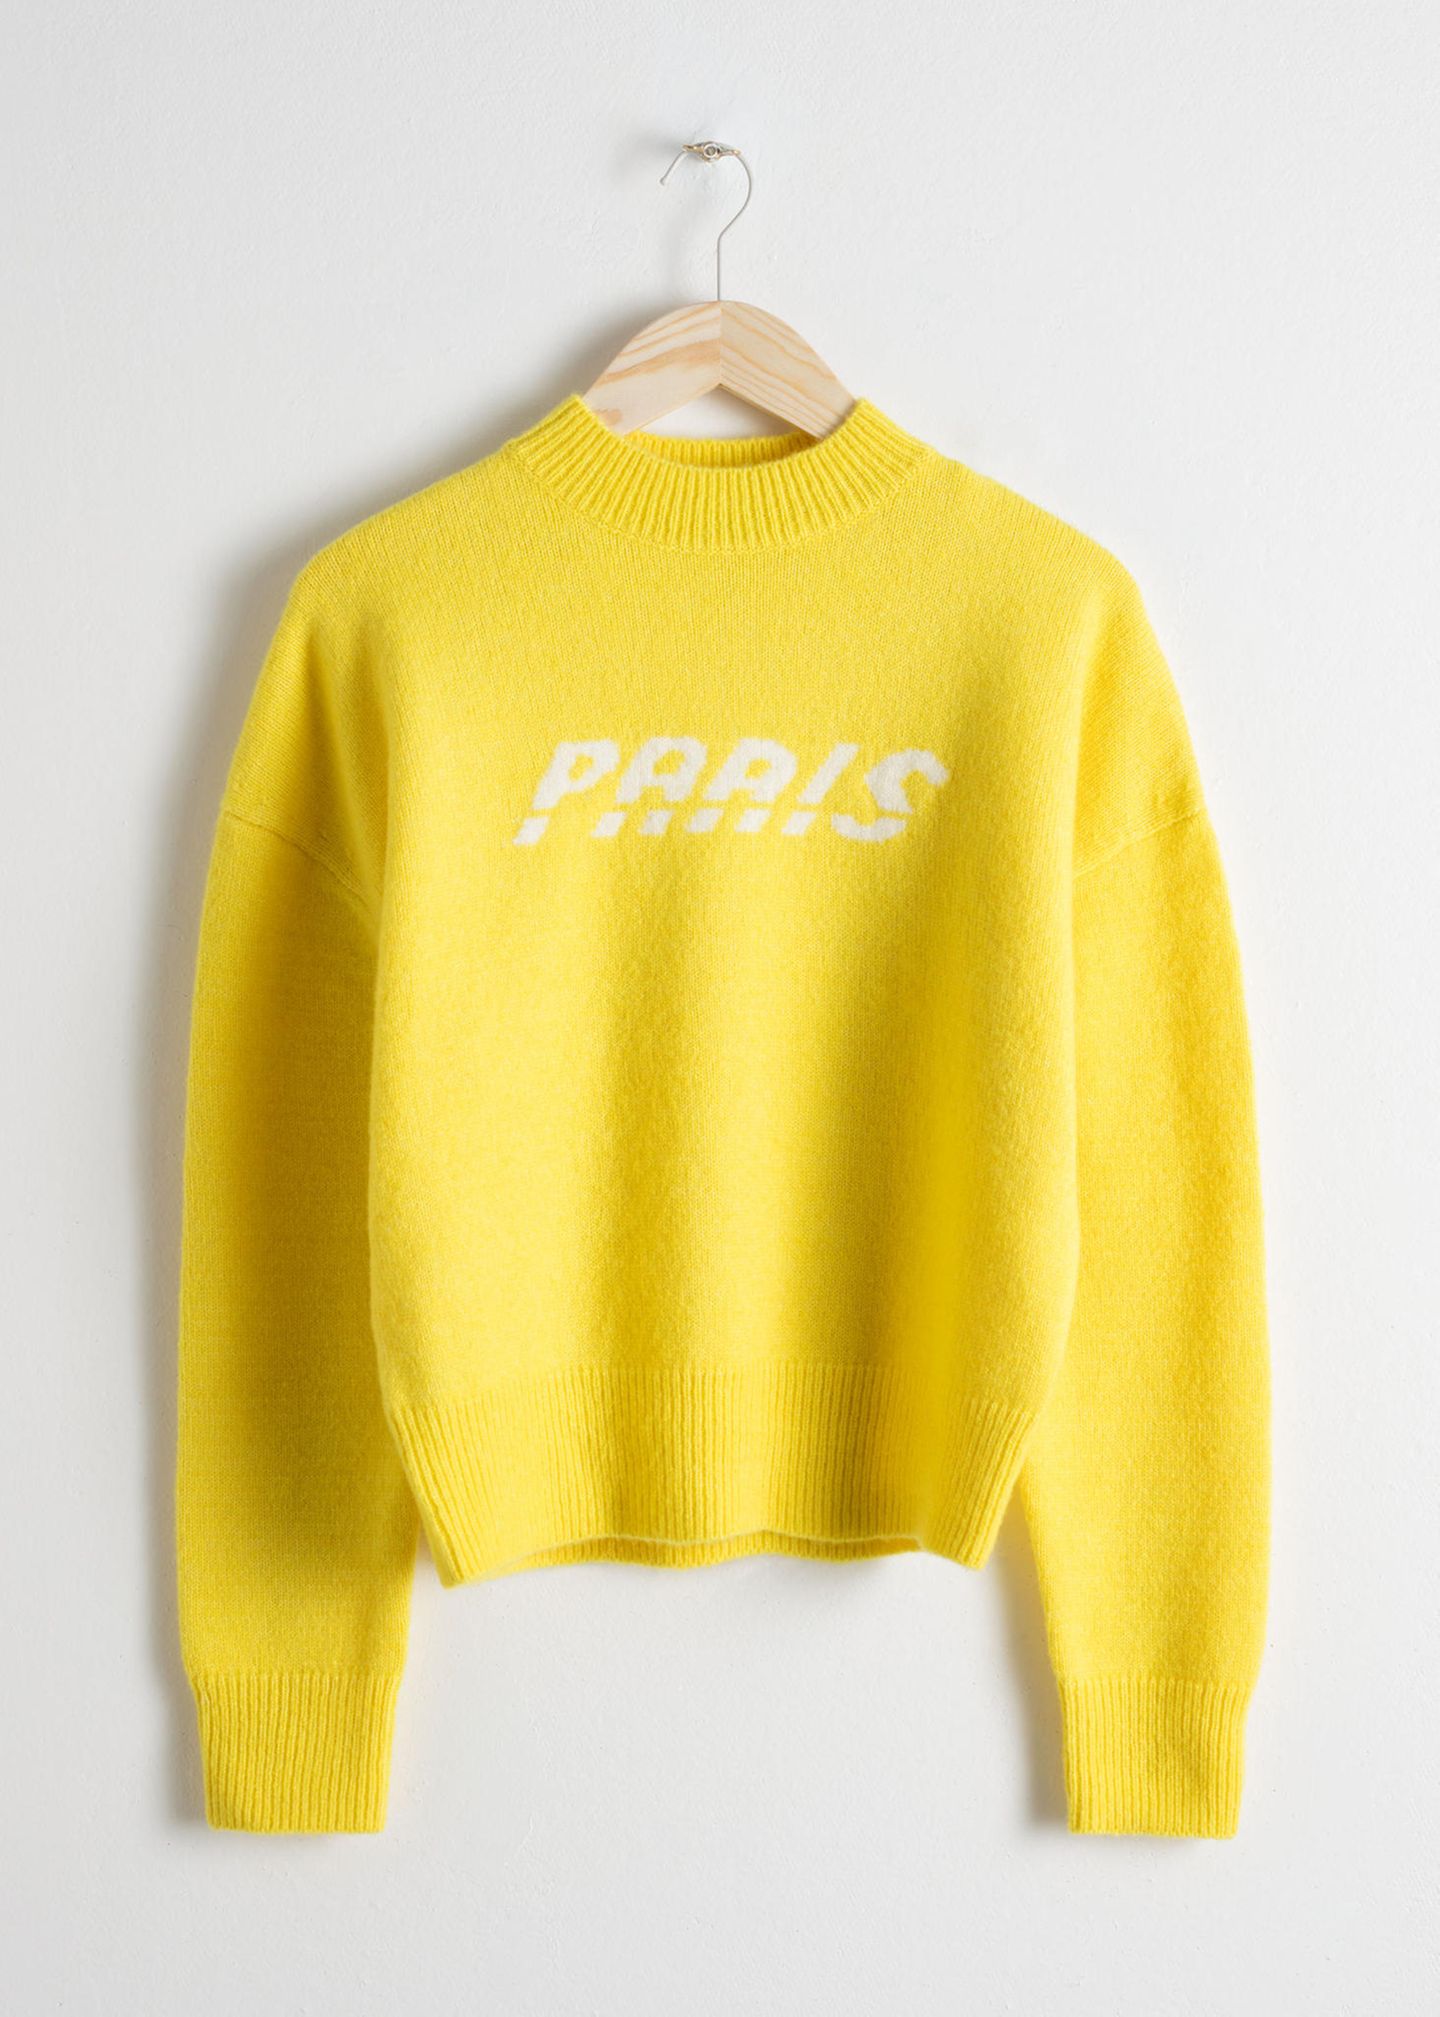 Für kalte Sommertage ist ein cooler Pullover nie verkehrt. Dieses gelbe Modell hat uns sofort umgehauen! Für rund 35 Euro bei & other stories erhältlich.